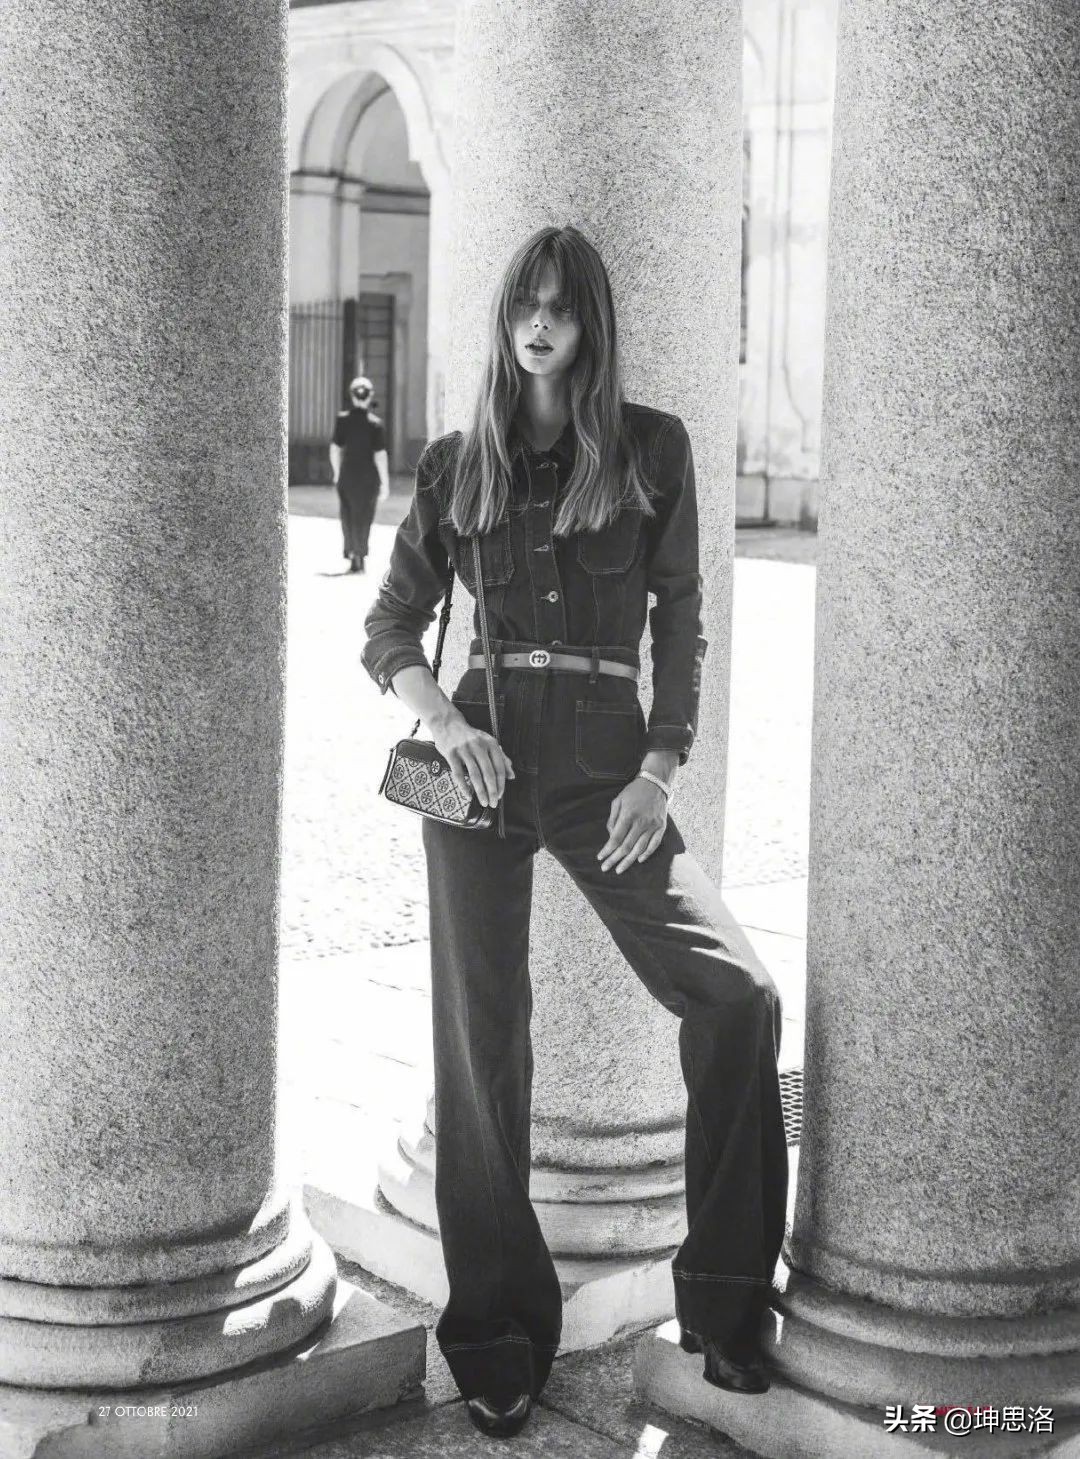 时装大片丨巴黎女郎的时髦街拍 70年代法式复古秋冬穿搭指南